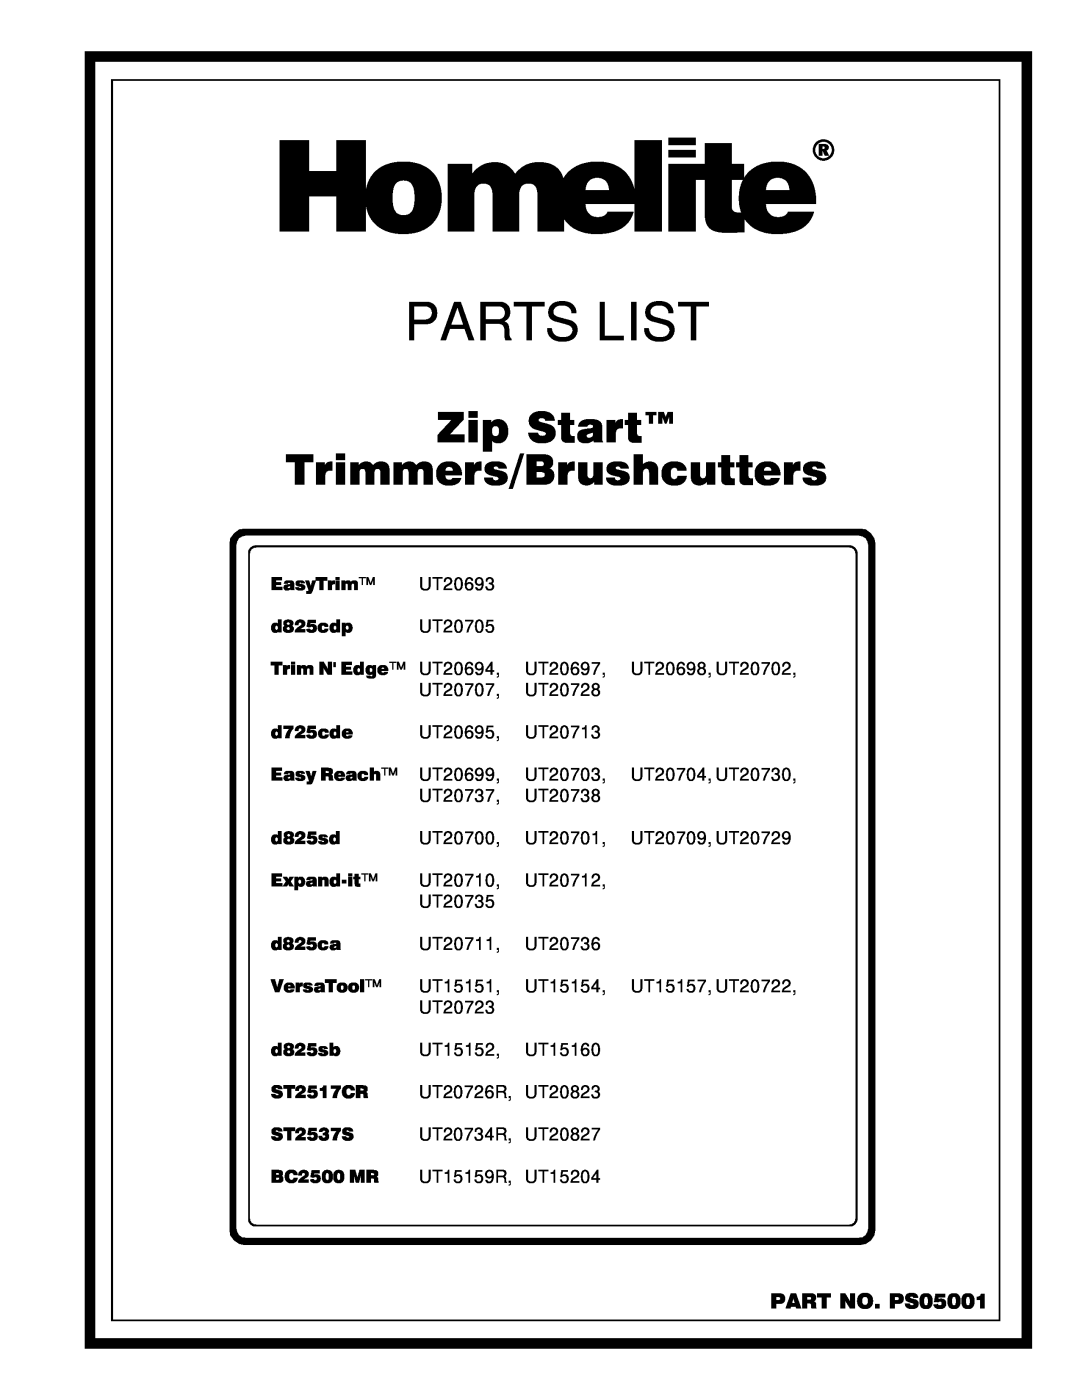 Homelite UT20729, UT20827, UT20730, UT20823 manual PART NO. PS05001, Homelite, Parts List, Zip Start Trimmers/Brushcutters 